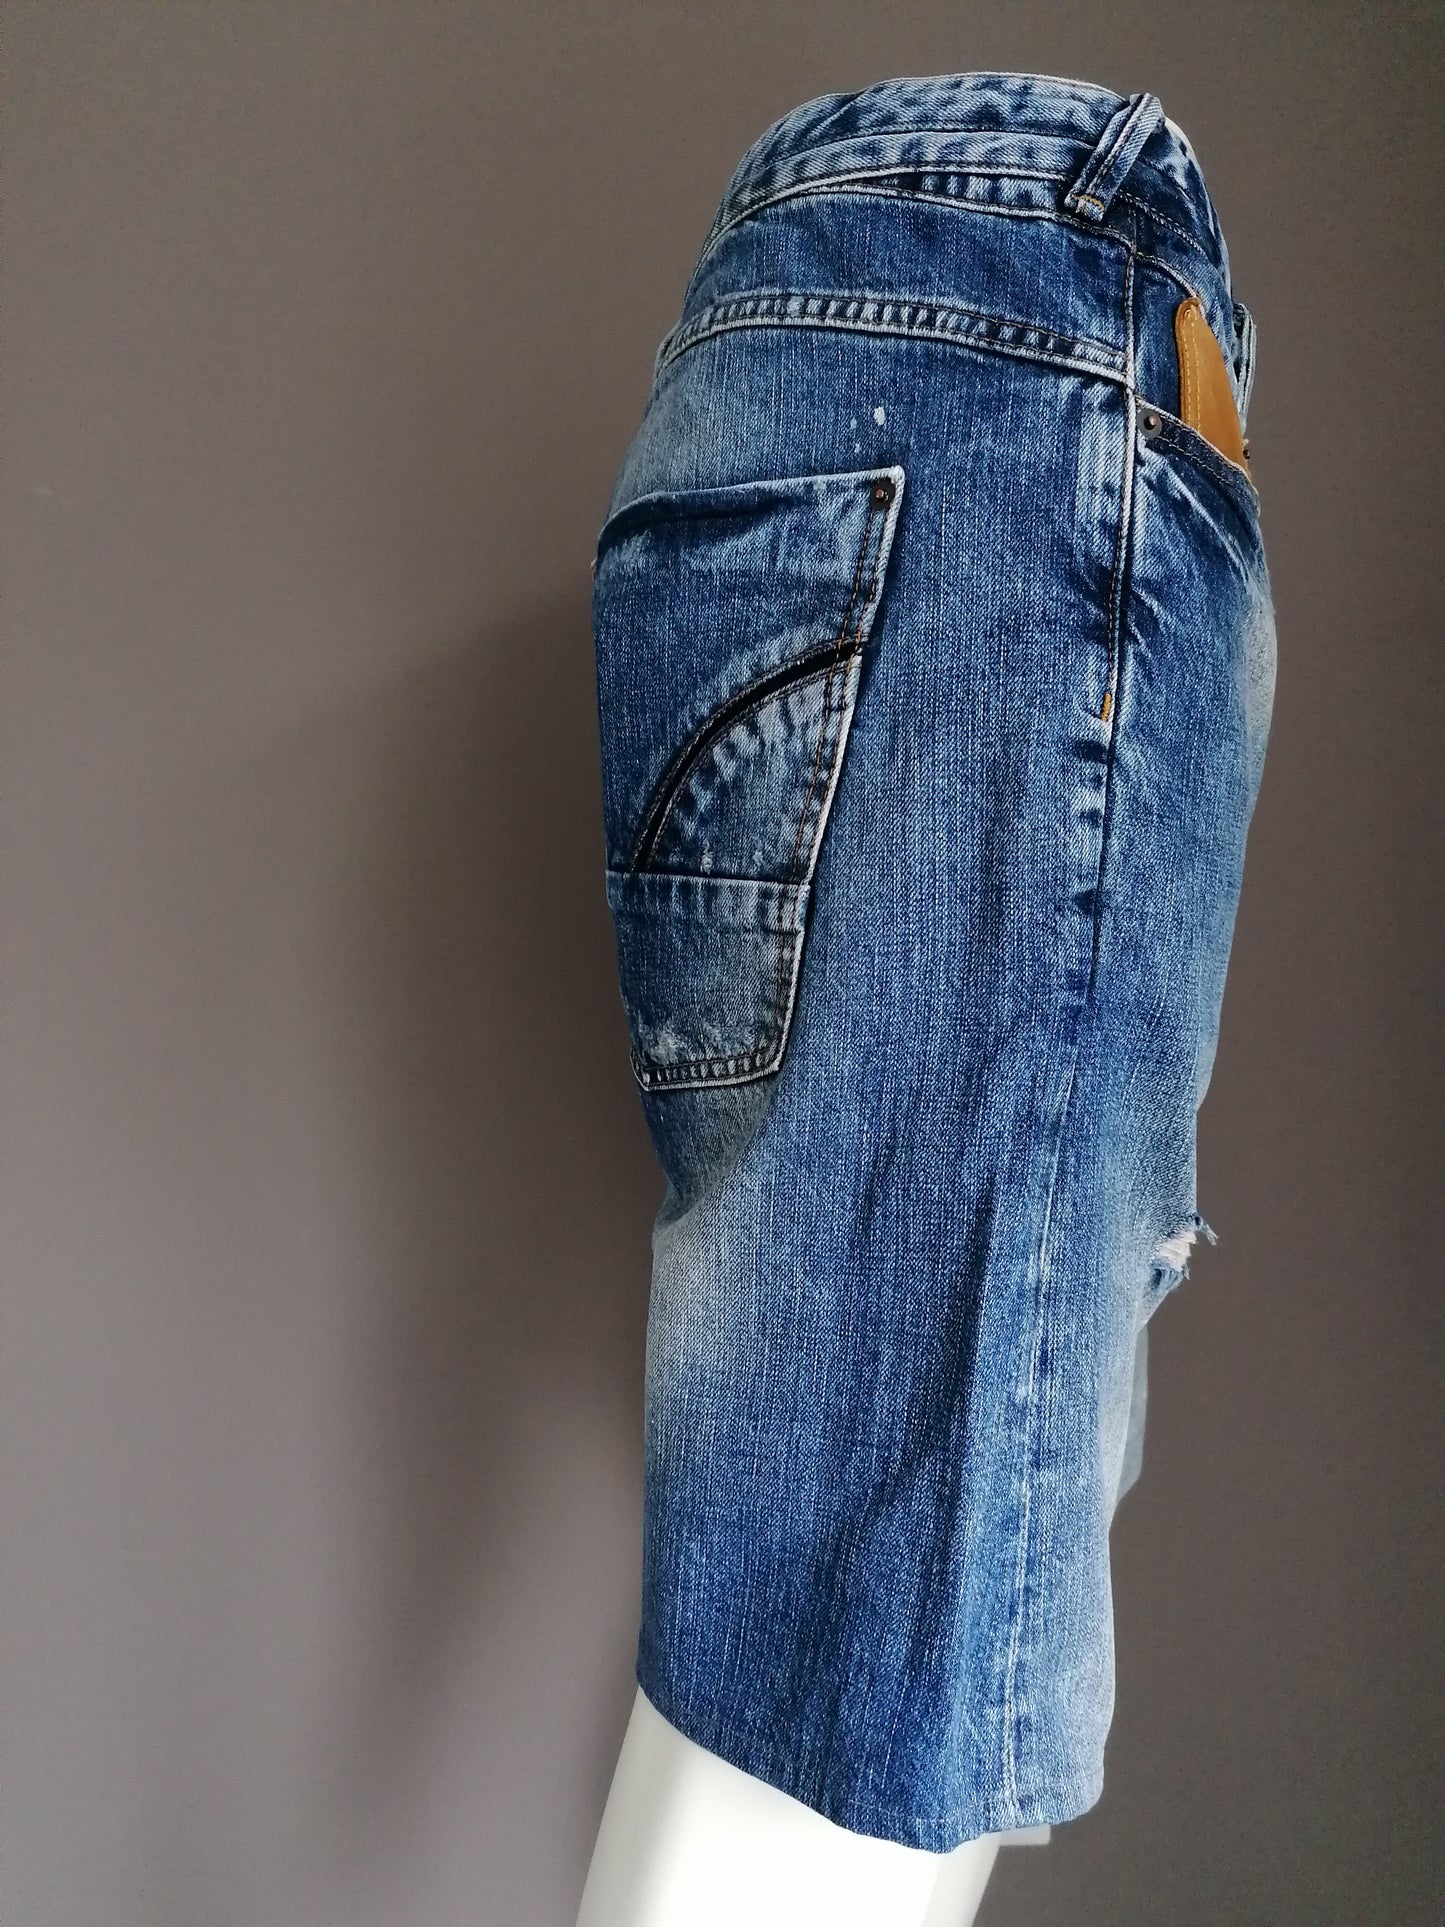 Pantalones cortos de jeans de la isla del río. Azul de color. Tamaño W38